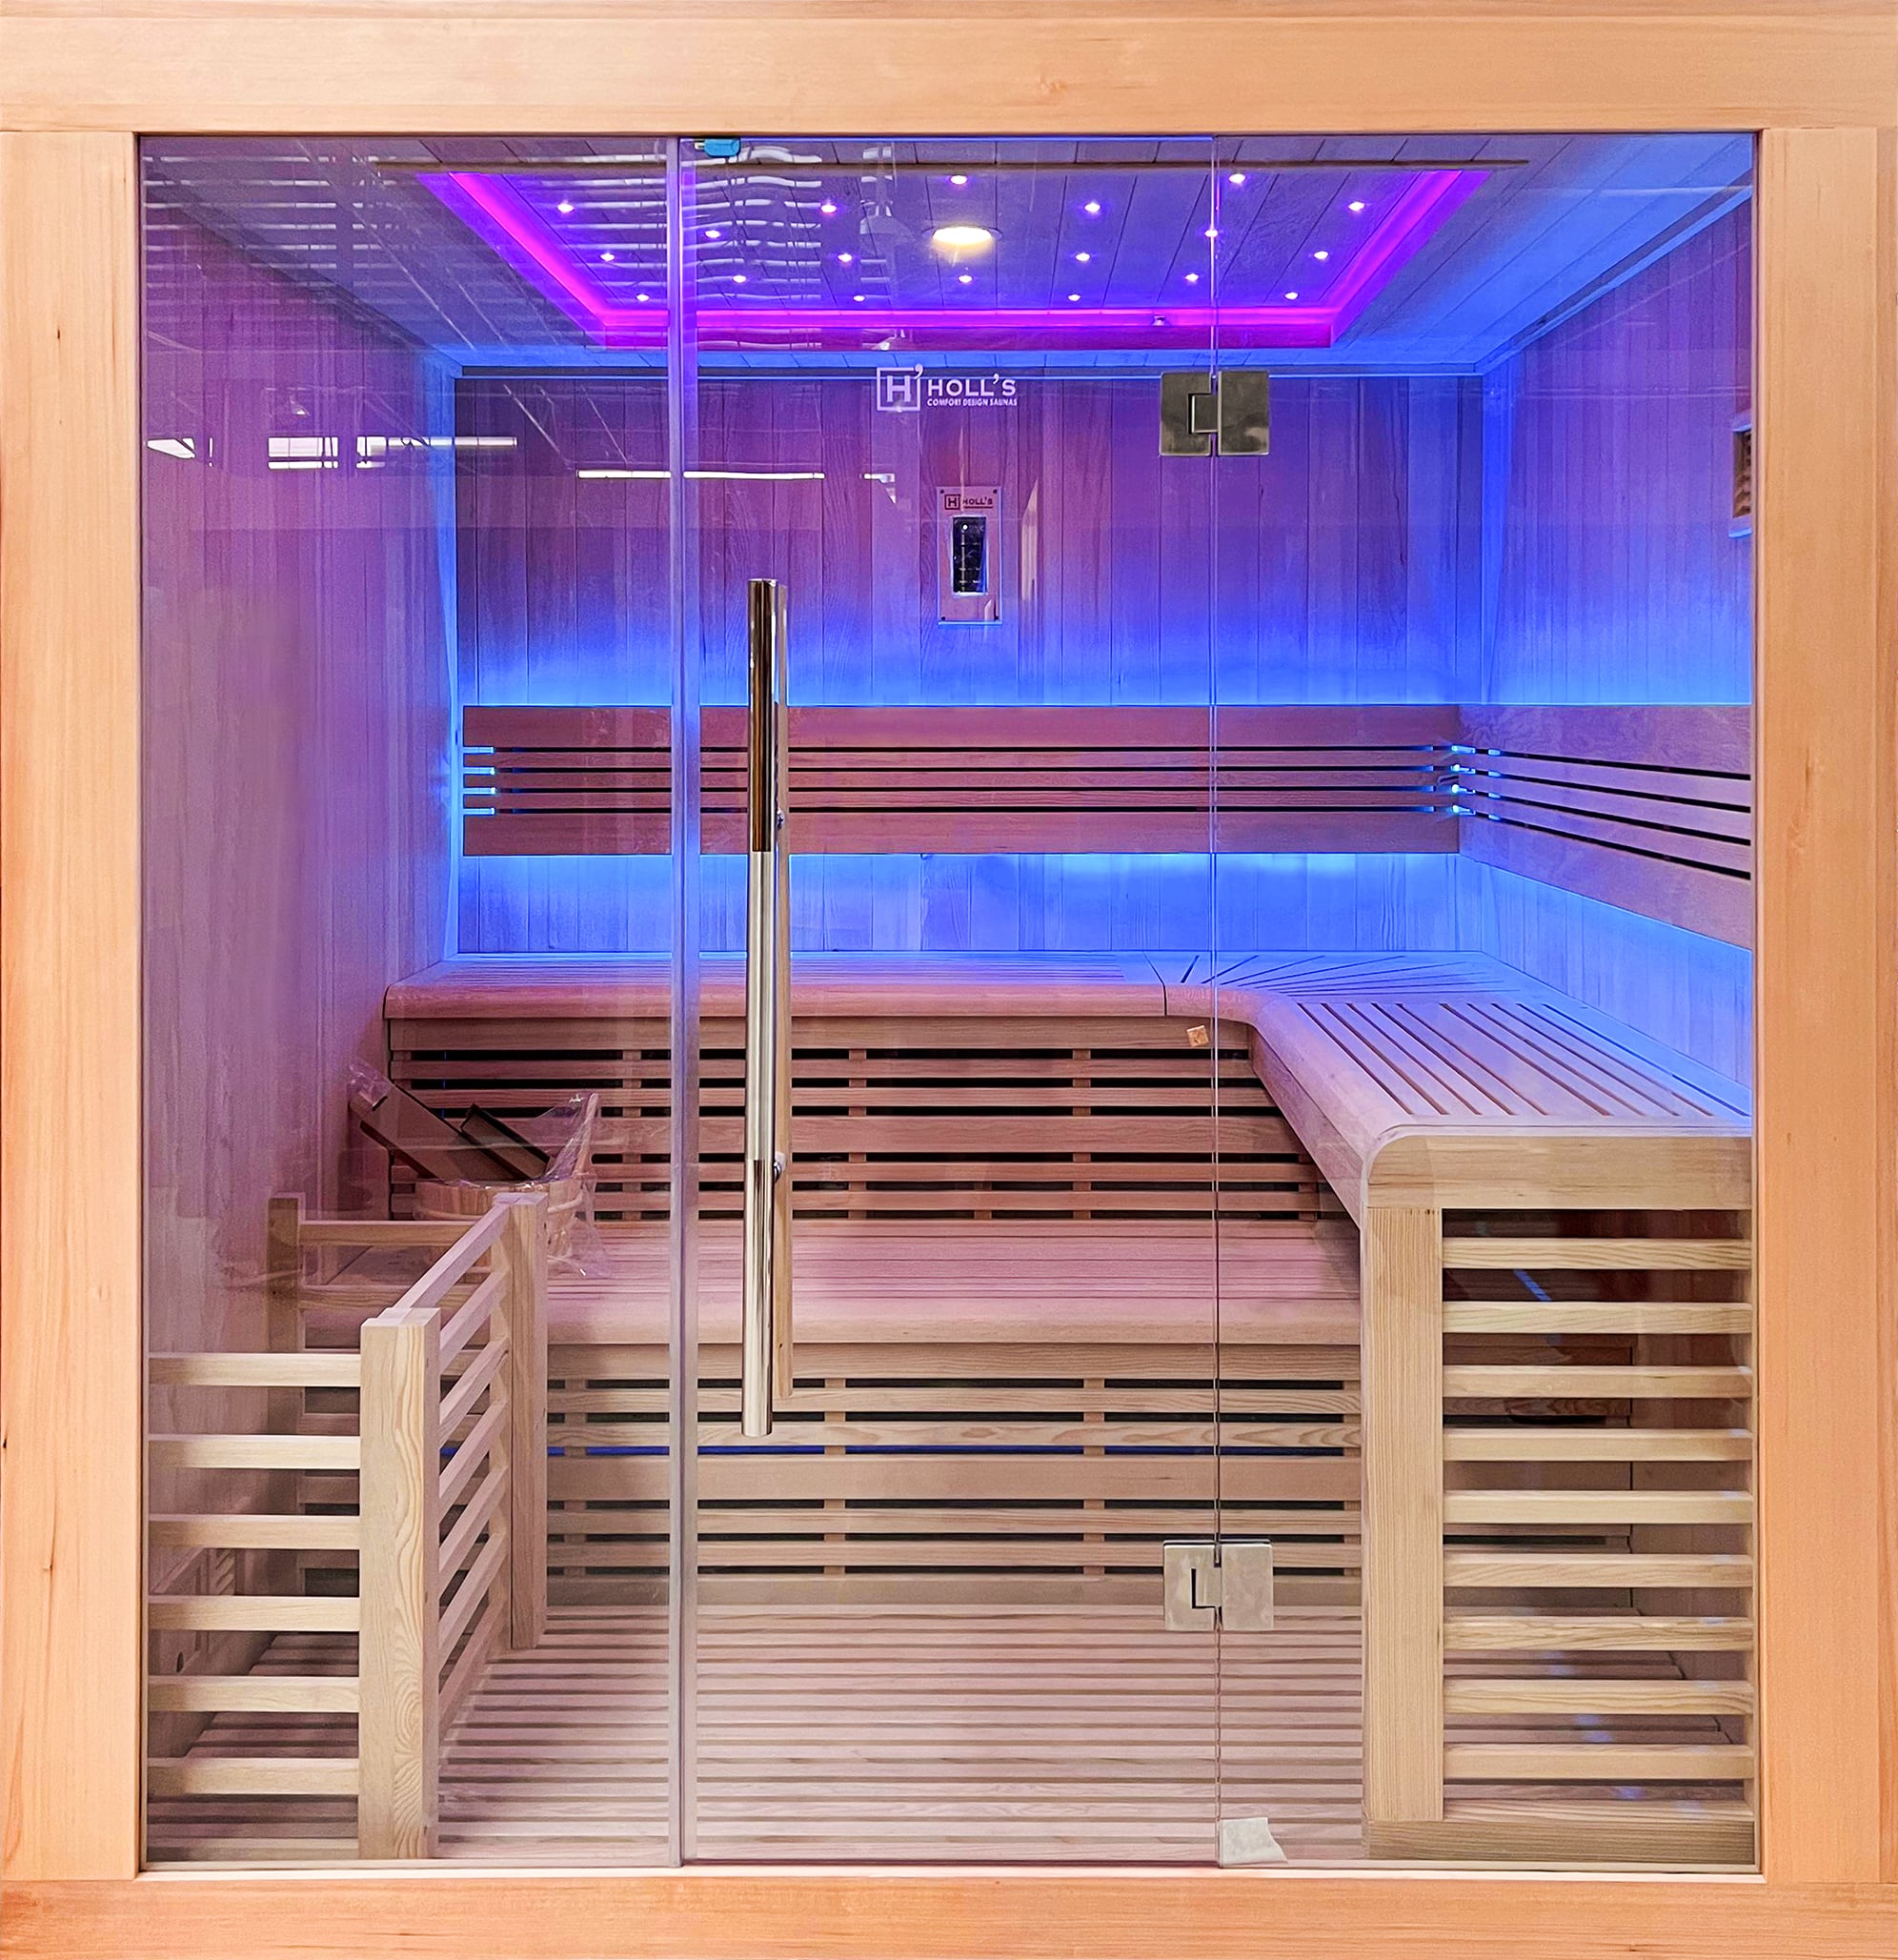 Tradicionalna sauna Utopia 6 (6 osoba) 8kW